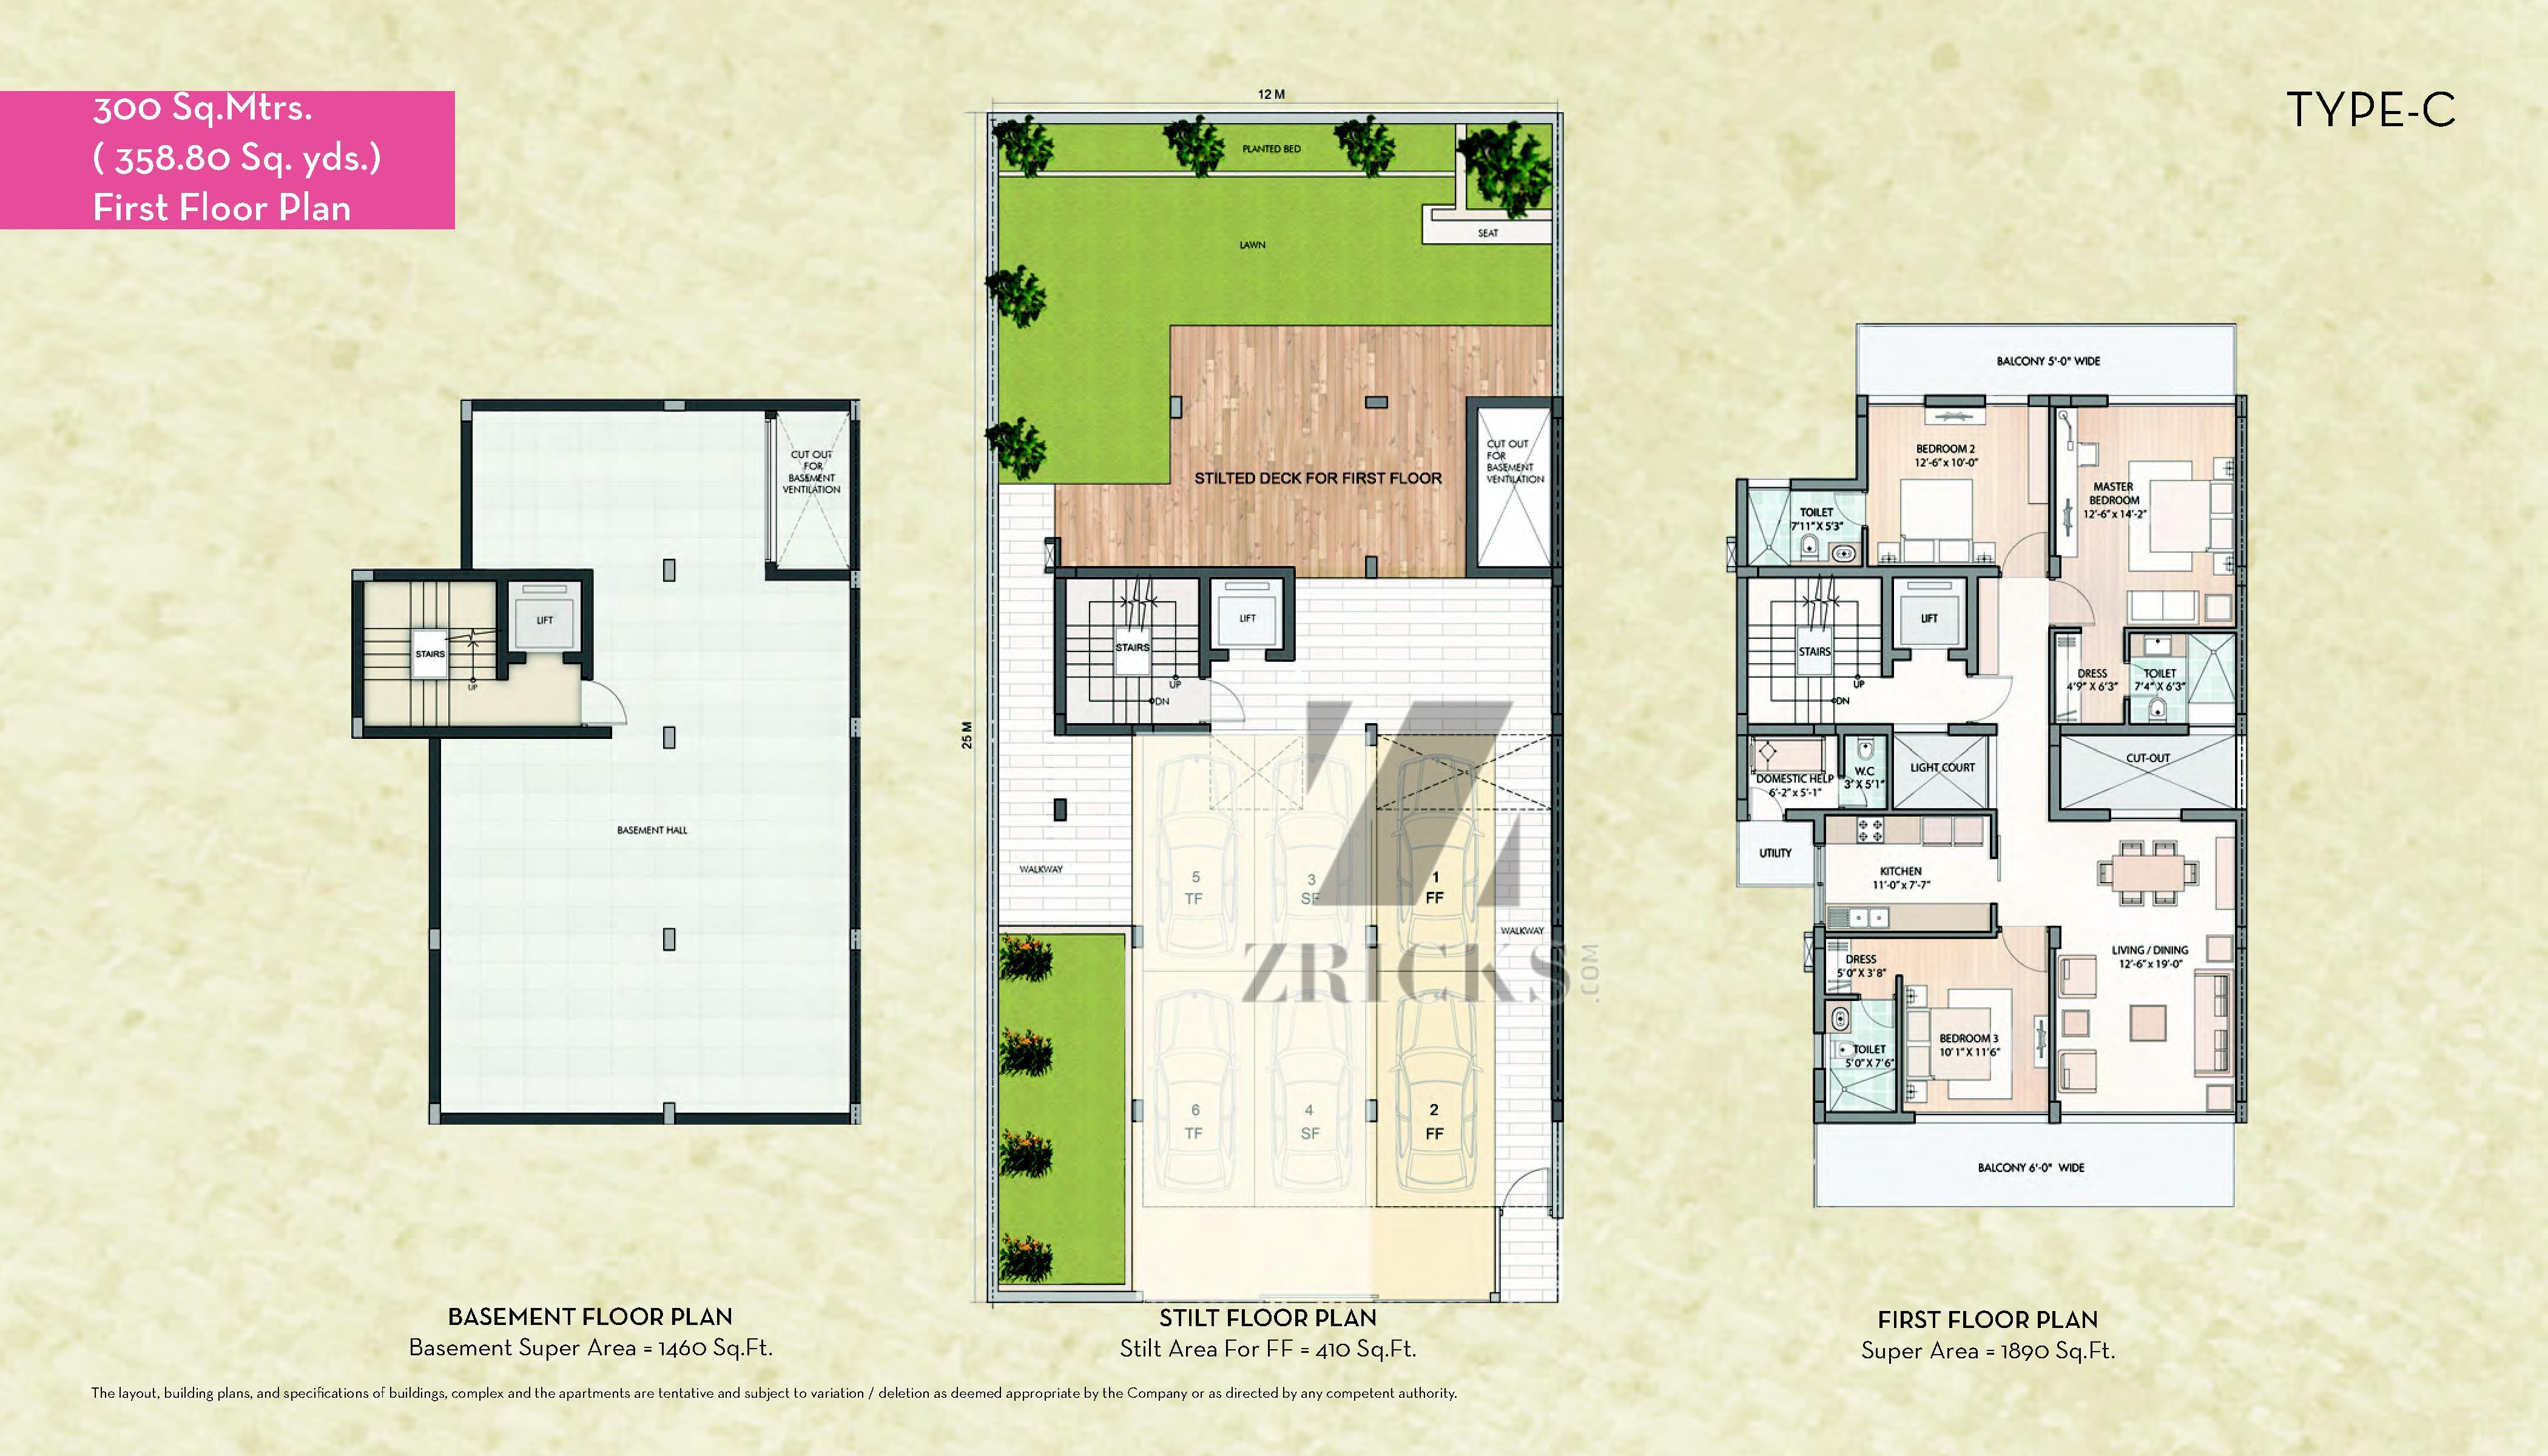 Unitech IVY Terraces Floor Plan